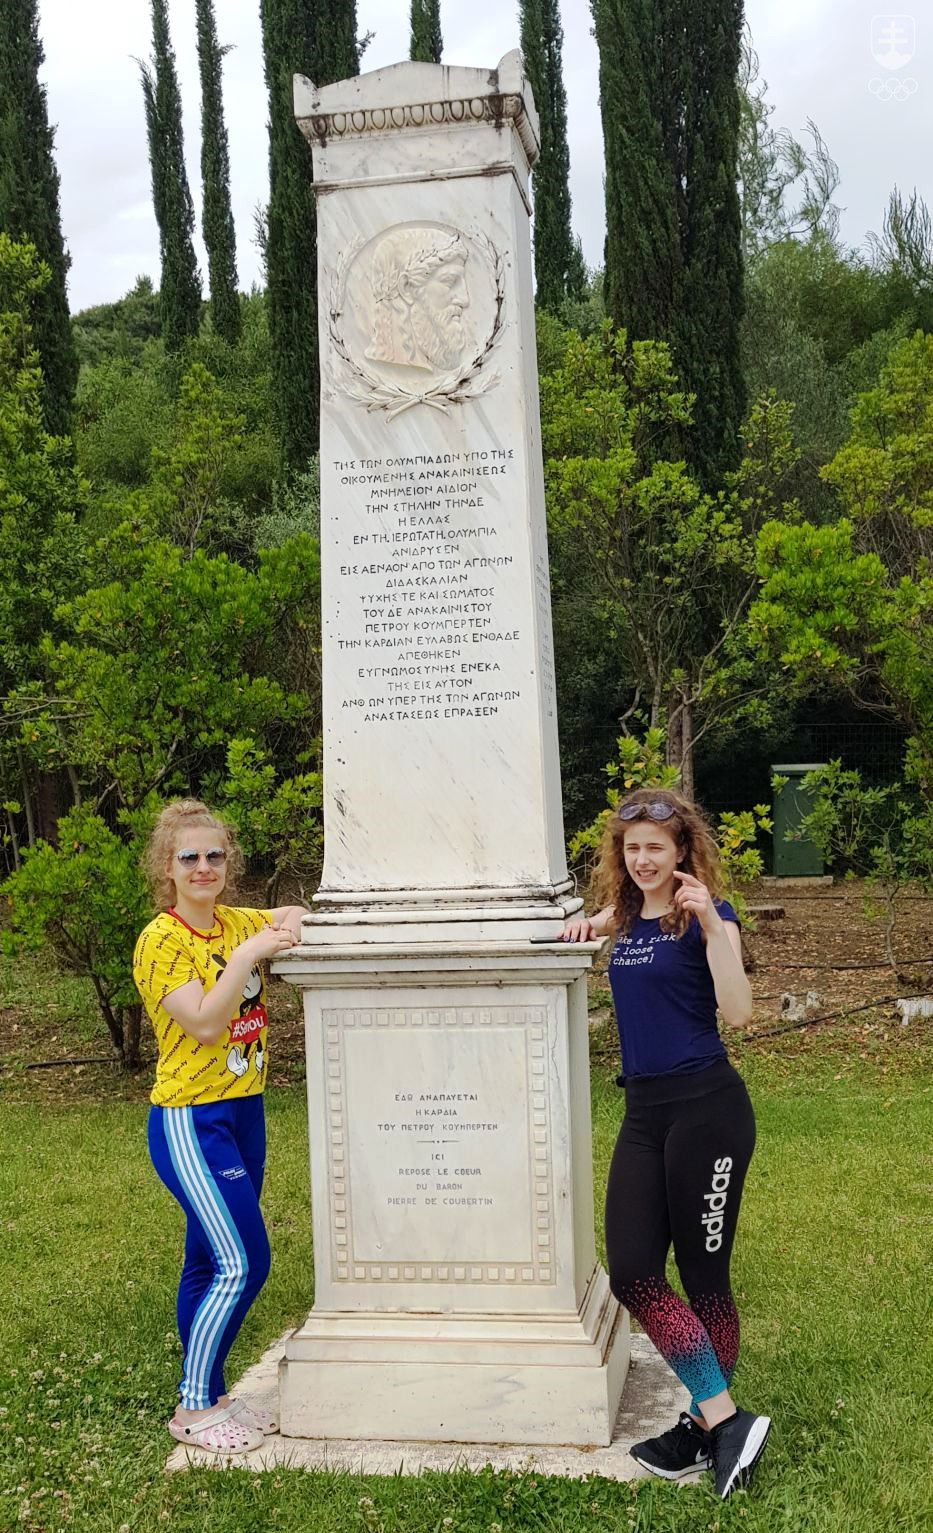 Naše medailistky z tohtoročného zimného EYOF, šortrekistky Petra Rusnáková a Lucia Filipová, pri pomníku, pod ktorým je pochované srdce zakladateľa novovekých olympijských hier Pierra de Coubertin.